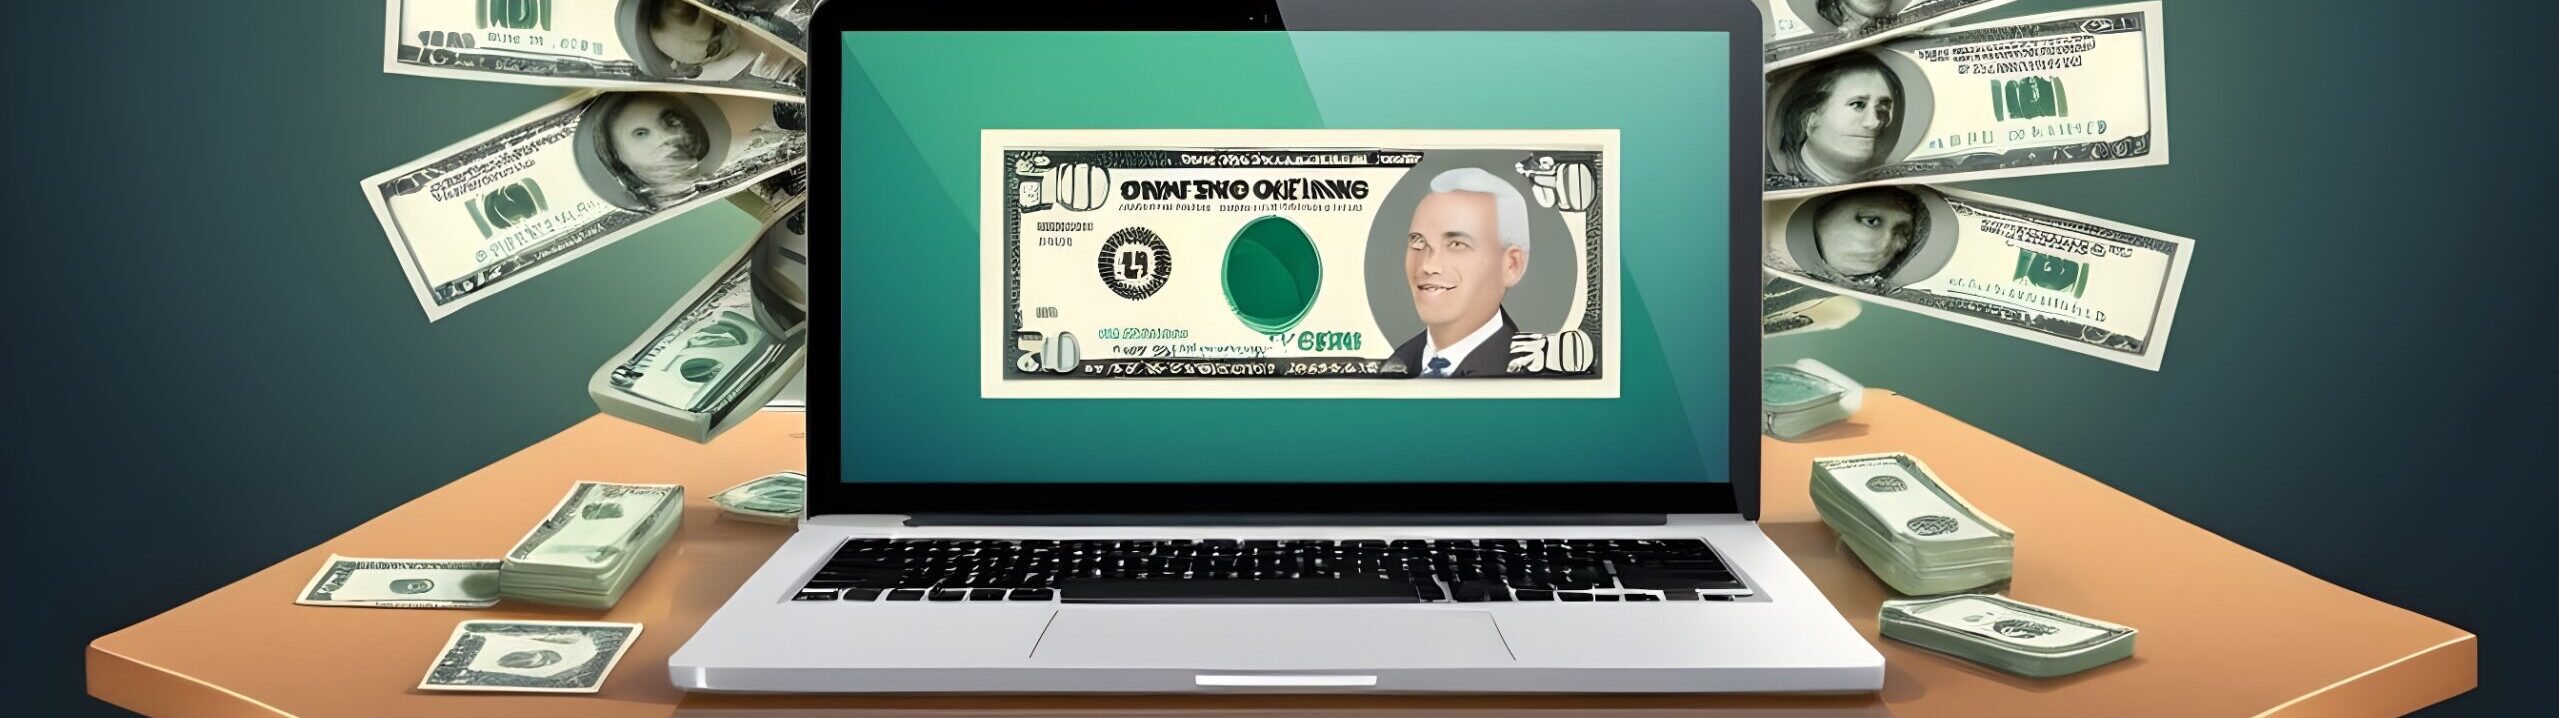 Make Money Online tips